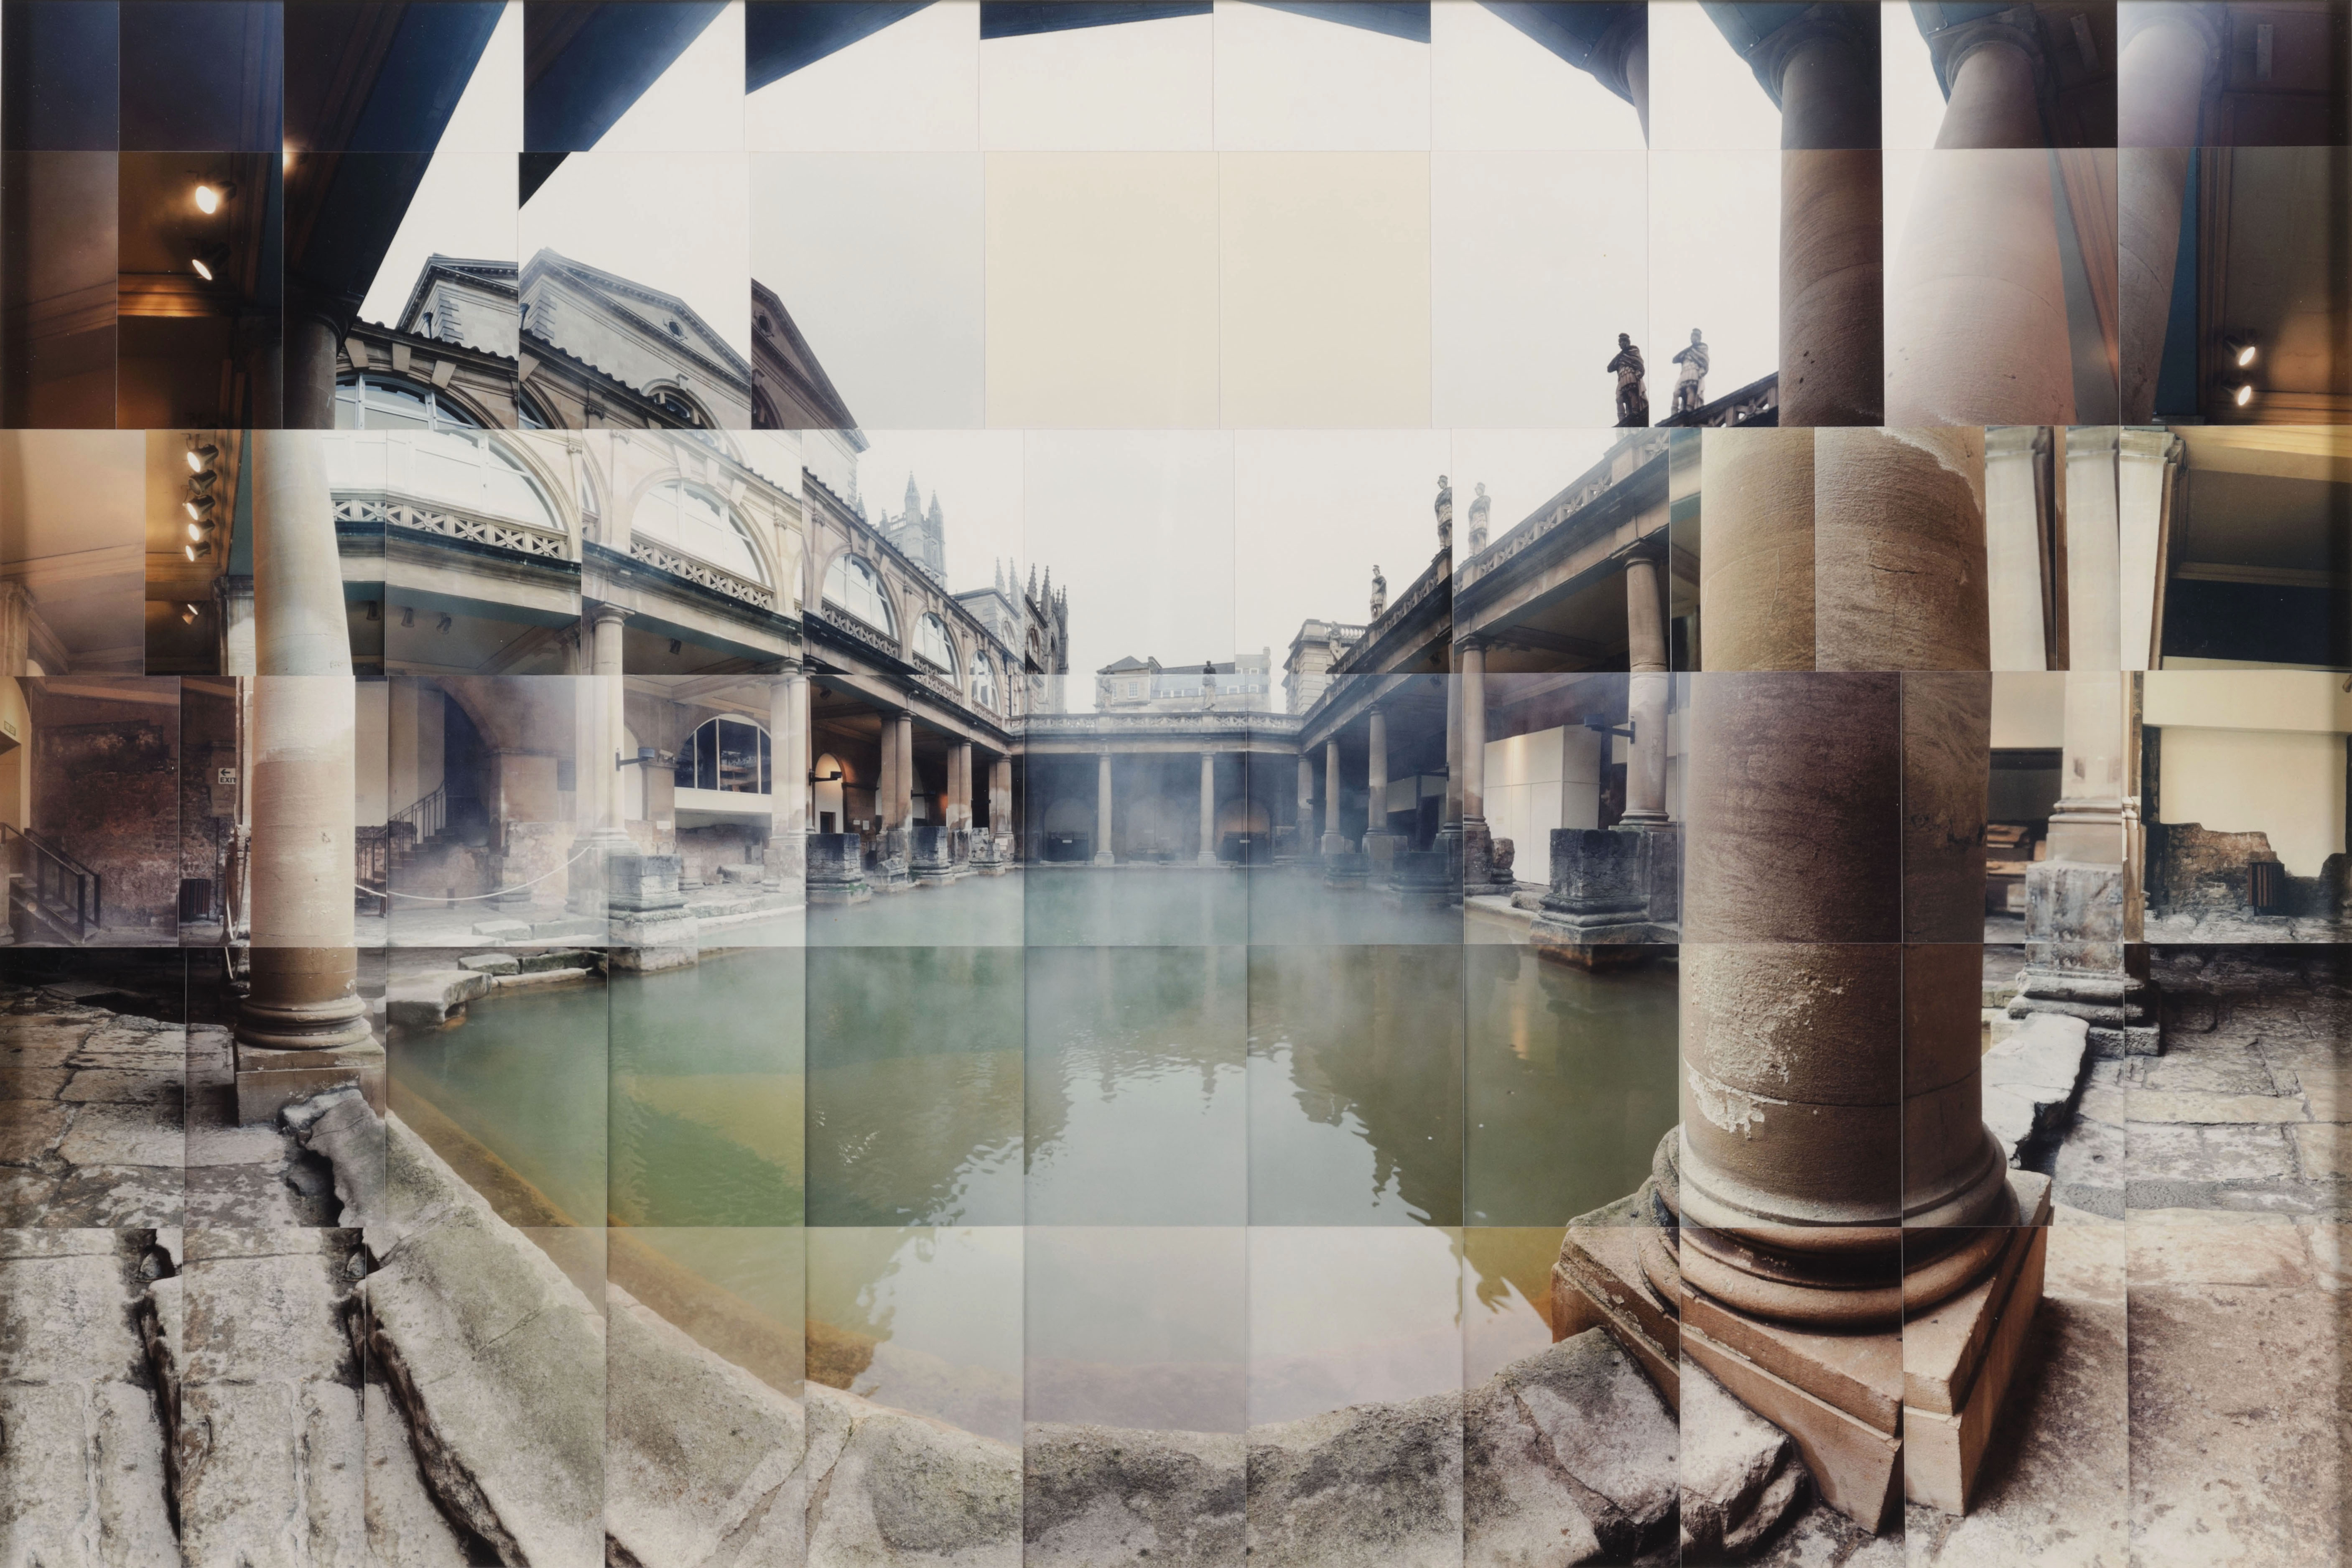 Roman Baths, Bath, England